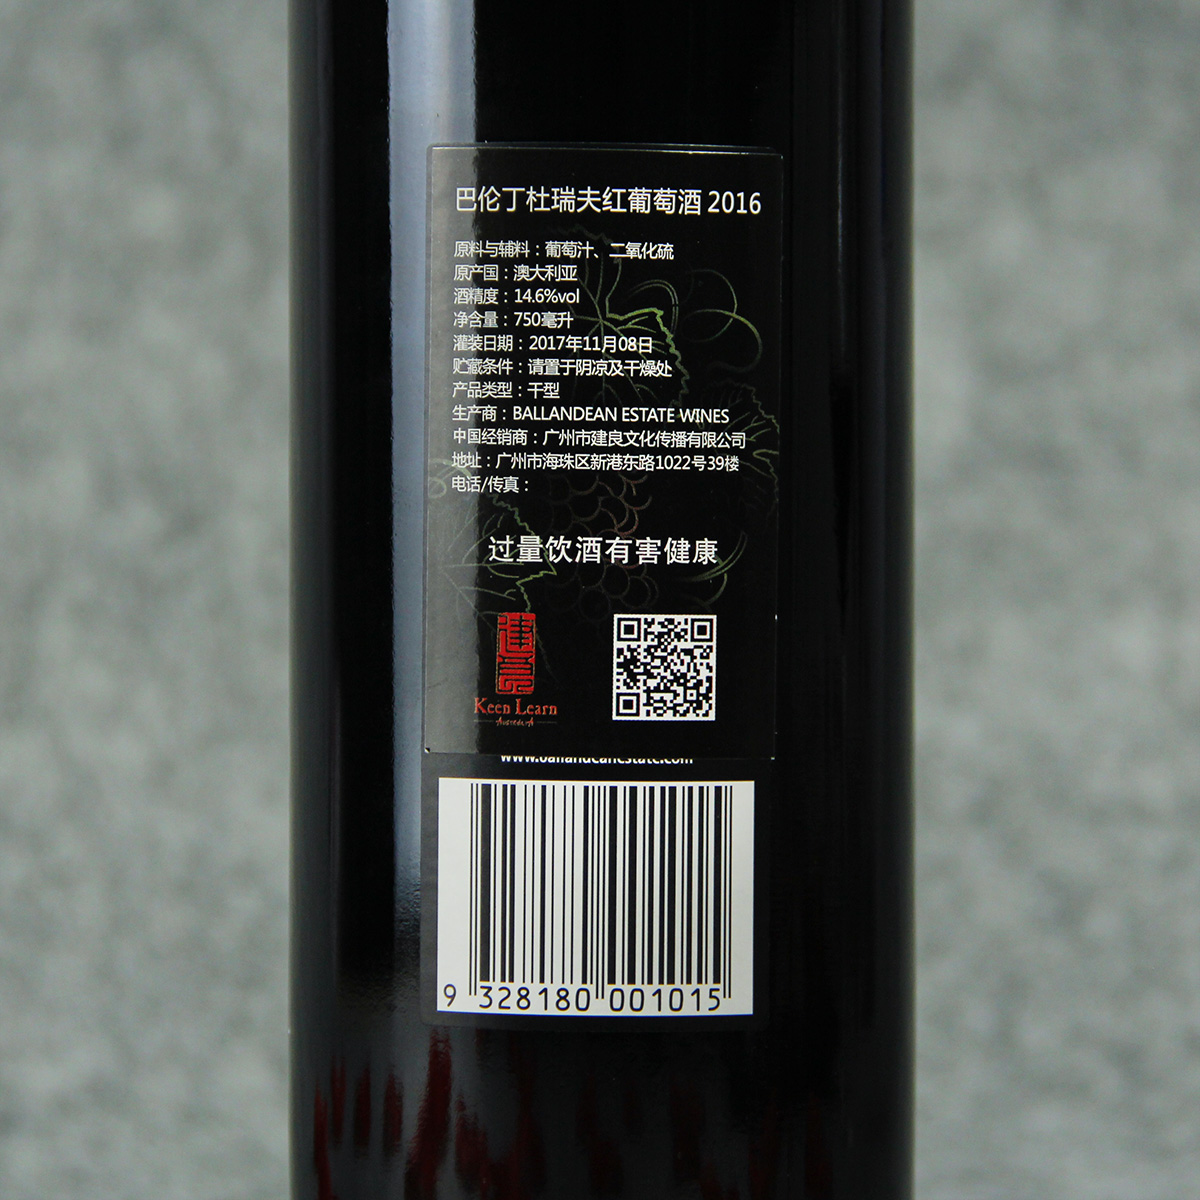 澳大利亚格兰纳特贝尔巴伦丁酒庄杜瑞夫干红葡萄酒红酒